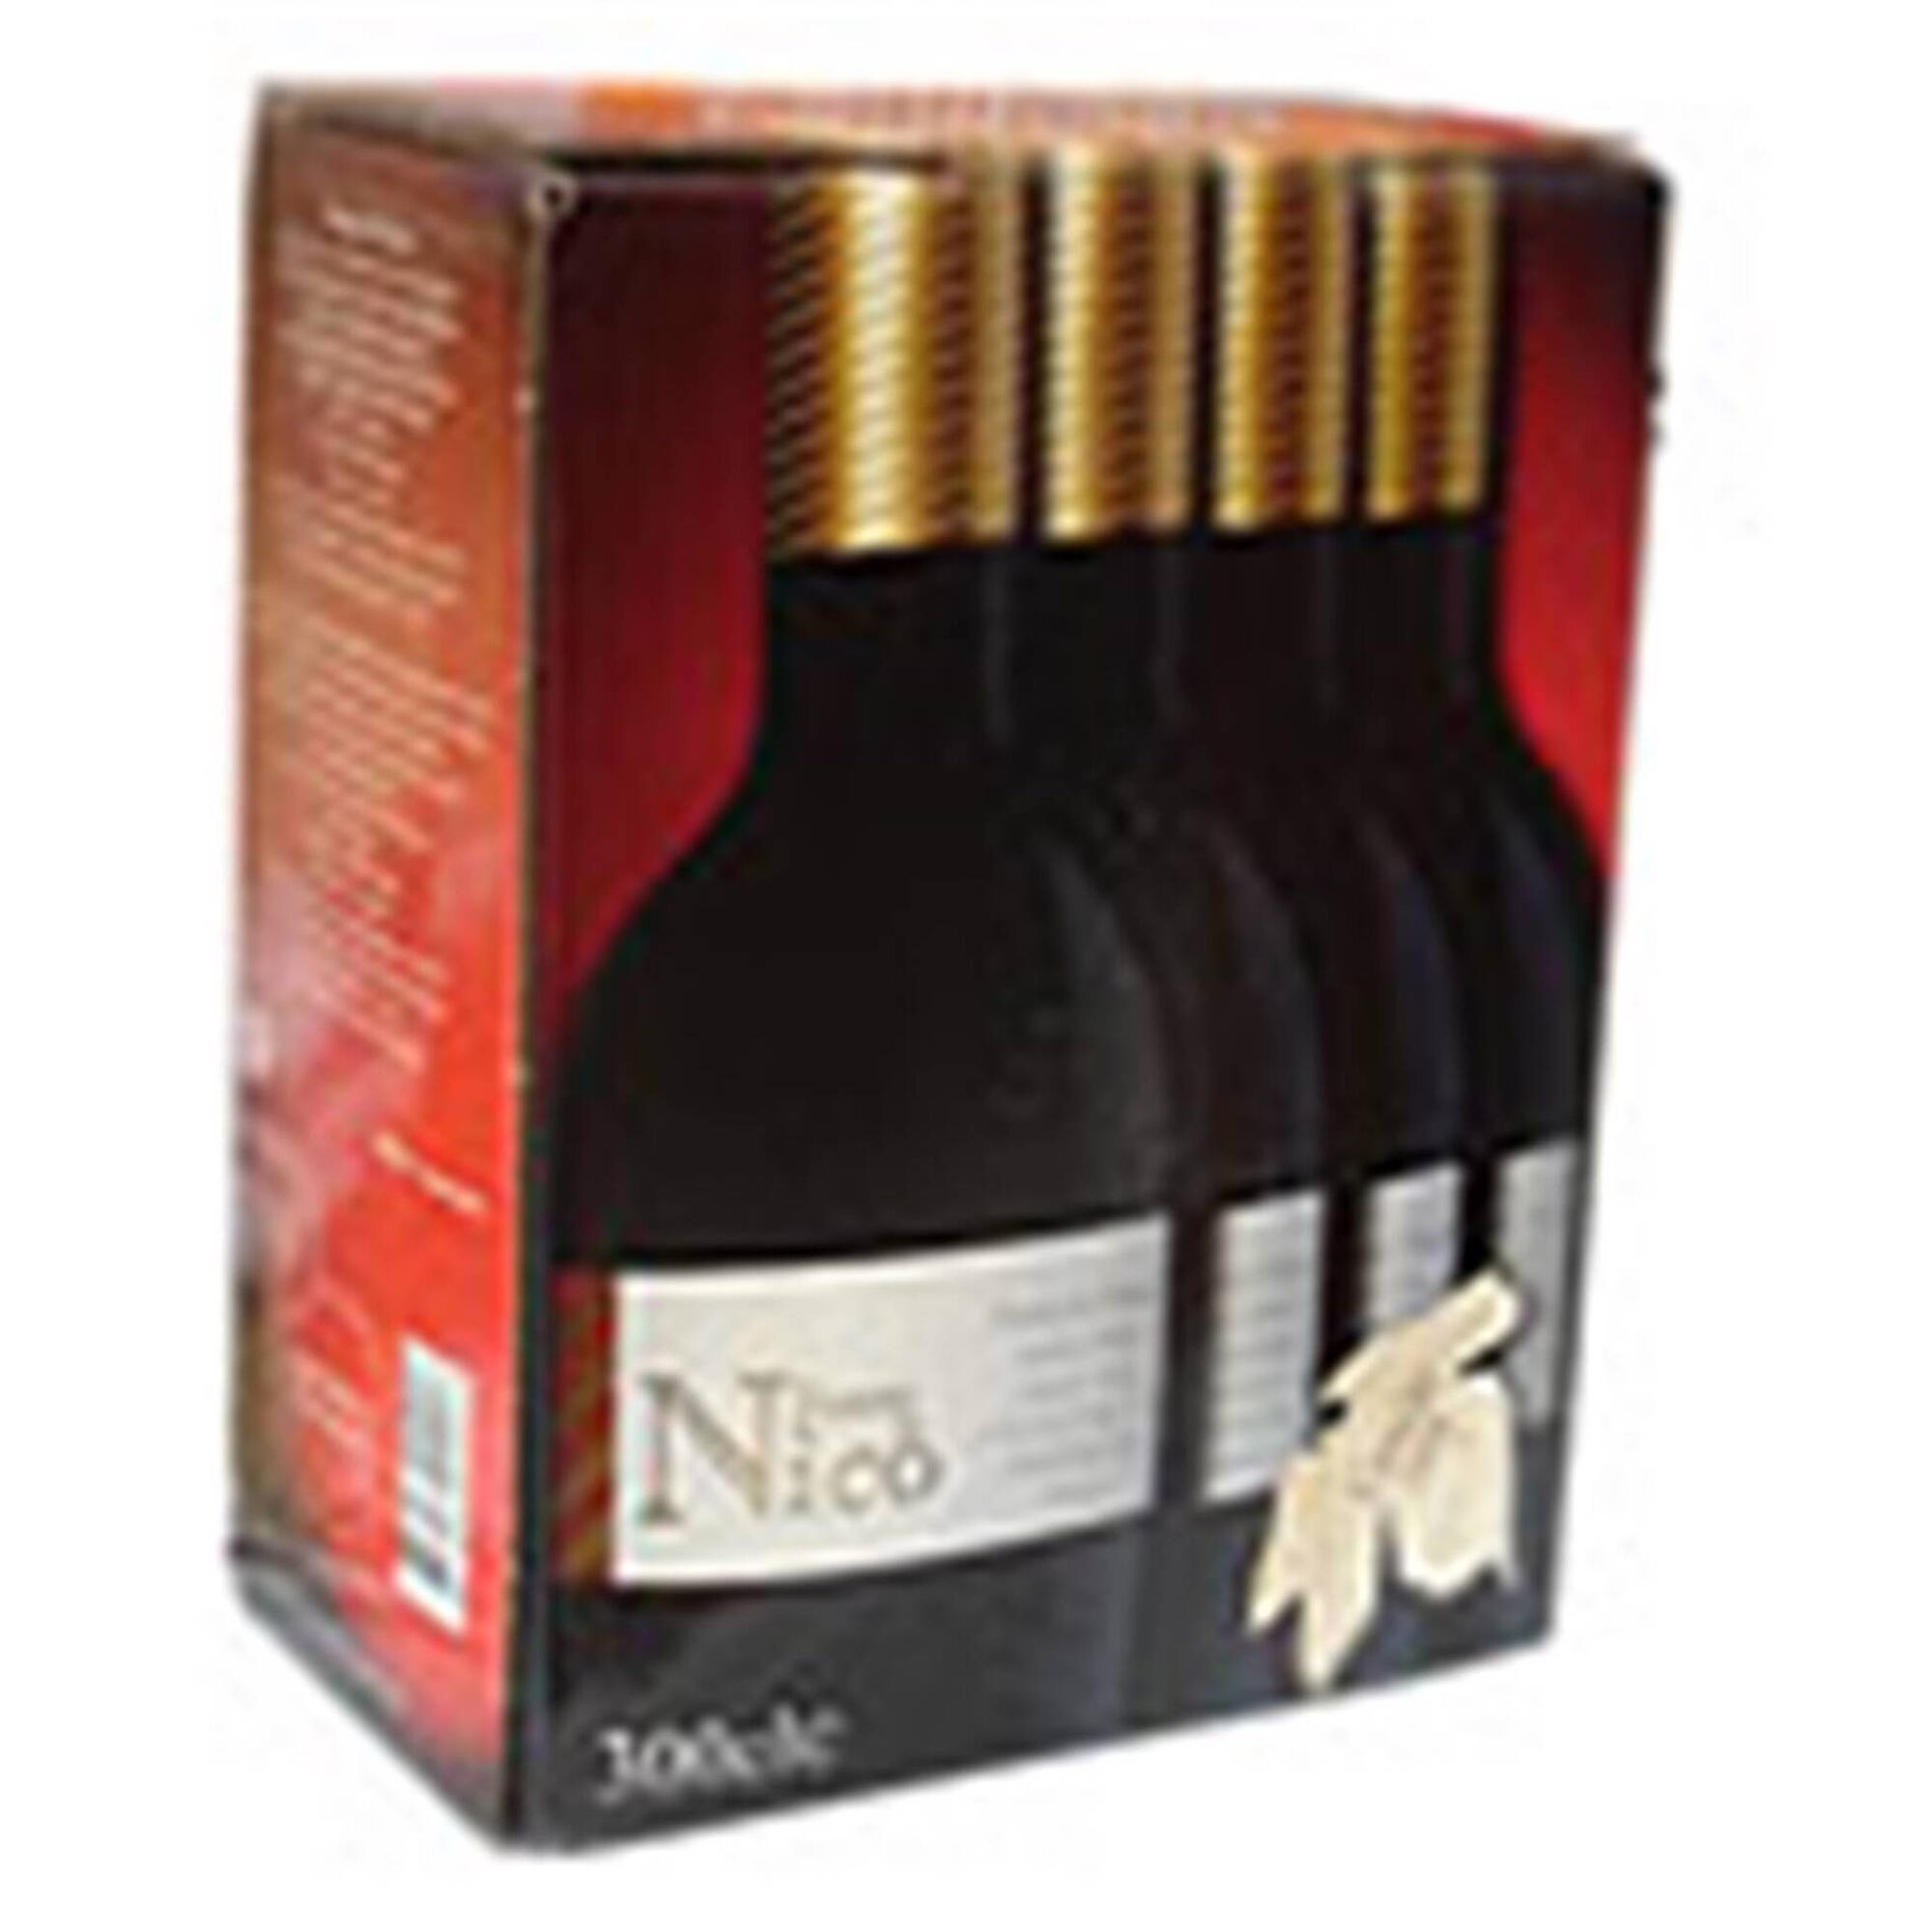 Fonte do Nico Regional Península de Setúbal Vinho Tinto